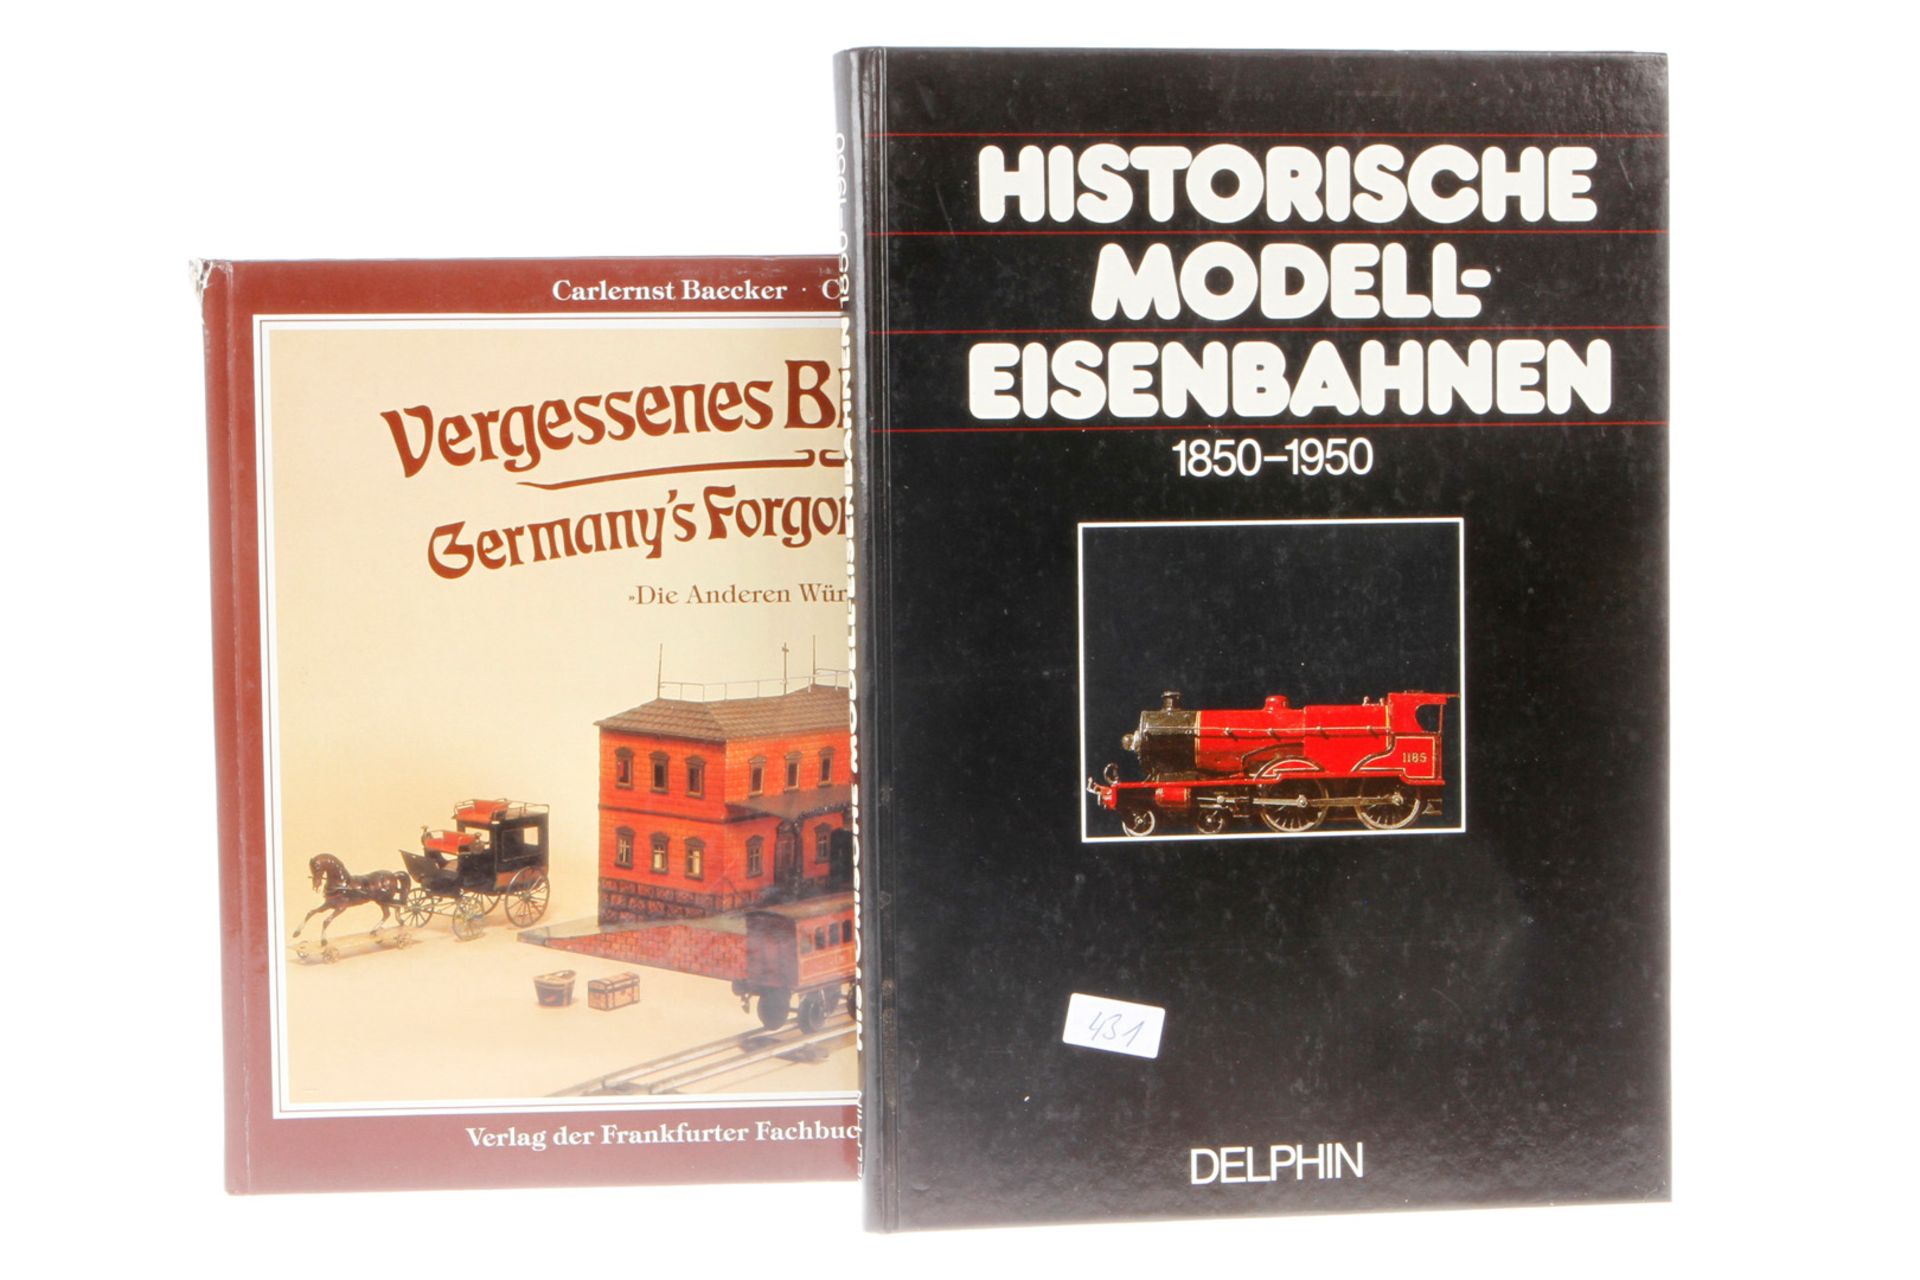 2 Bücher, "Historische Modell-Eisenbahnen" und "Vergessenes Blechspielzeug", Alterungs- und